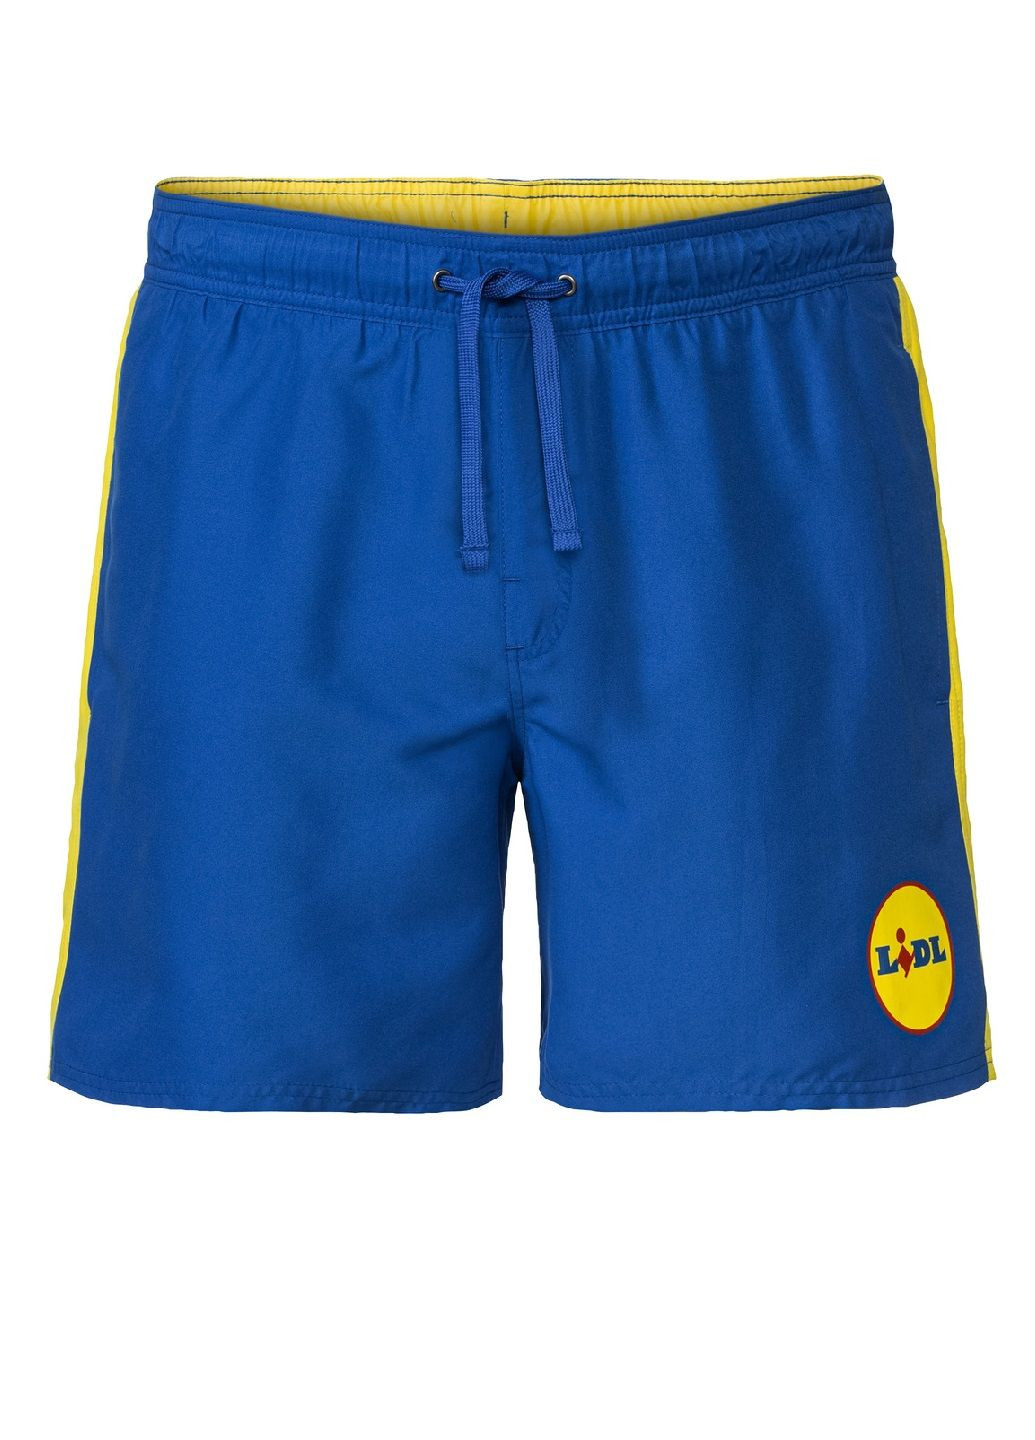 Мужские голубые пляжные шорты для плавания Lidl